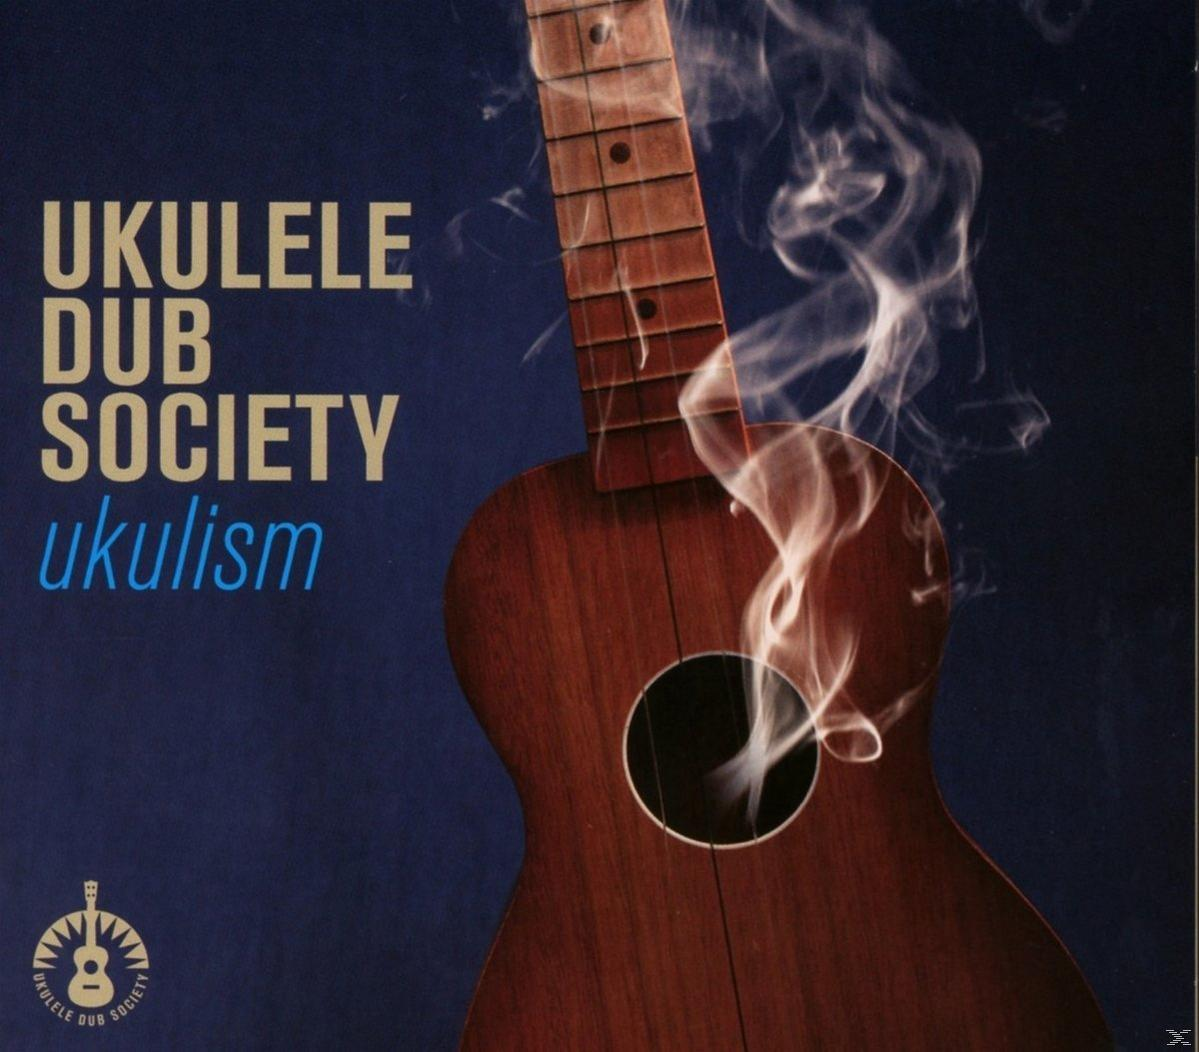 Ukulele Dub Society - (CD) - Ukulism